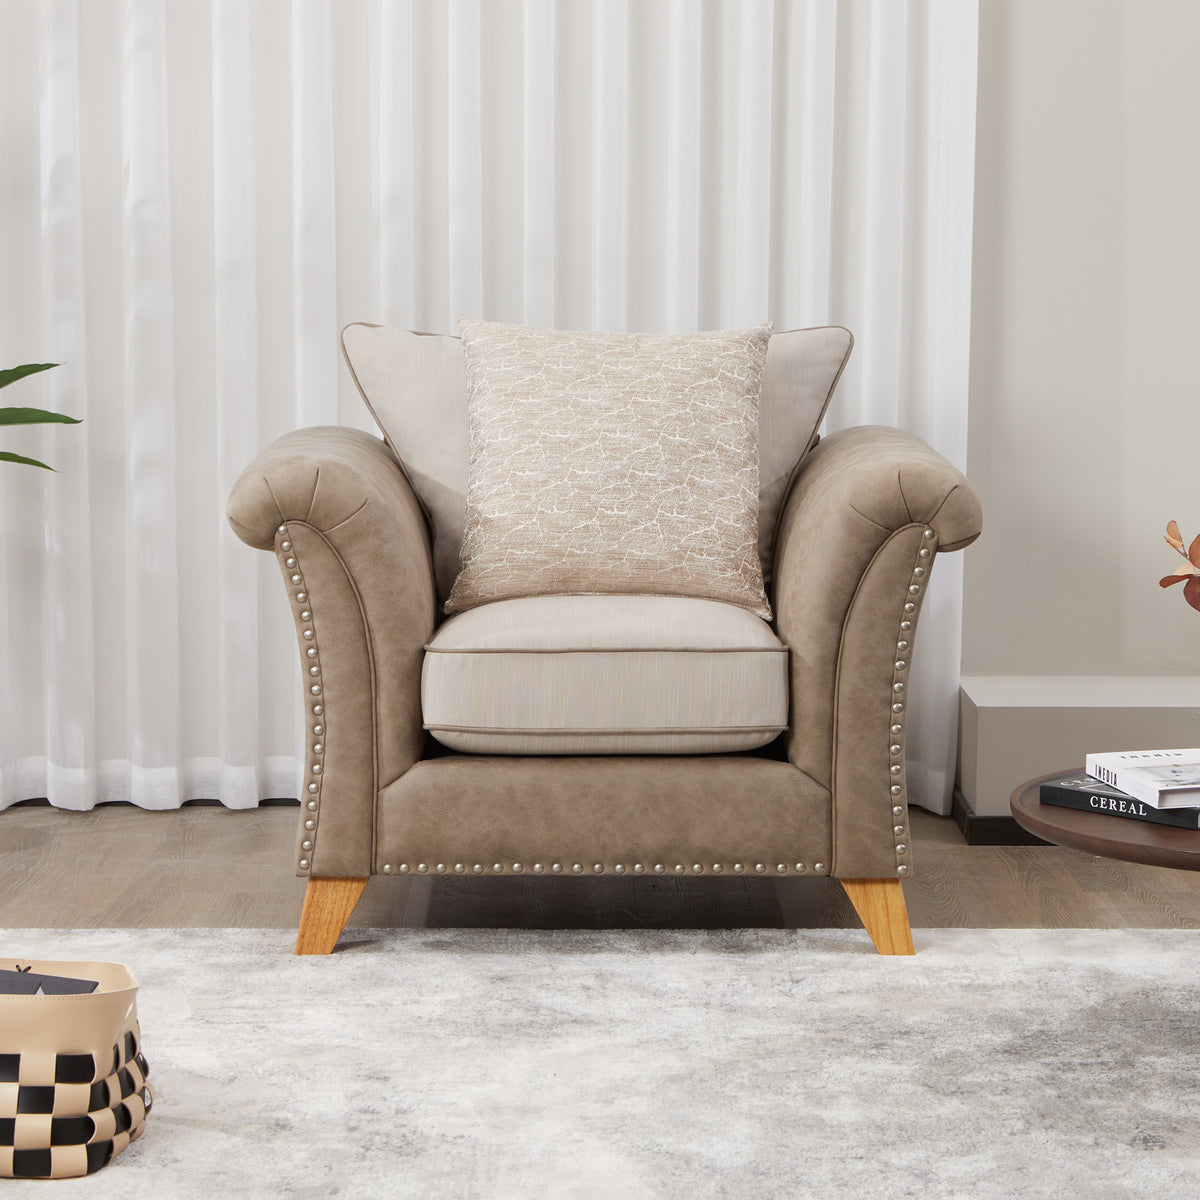 Breton Beige Armchair for living room